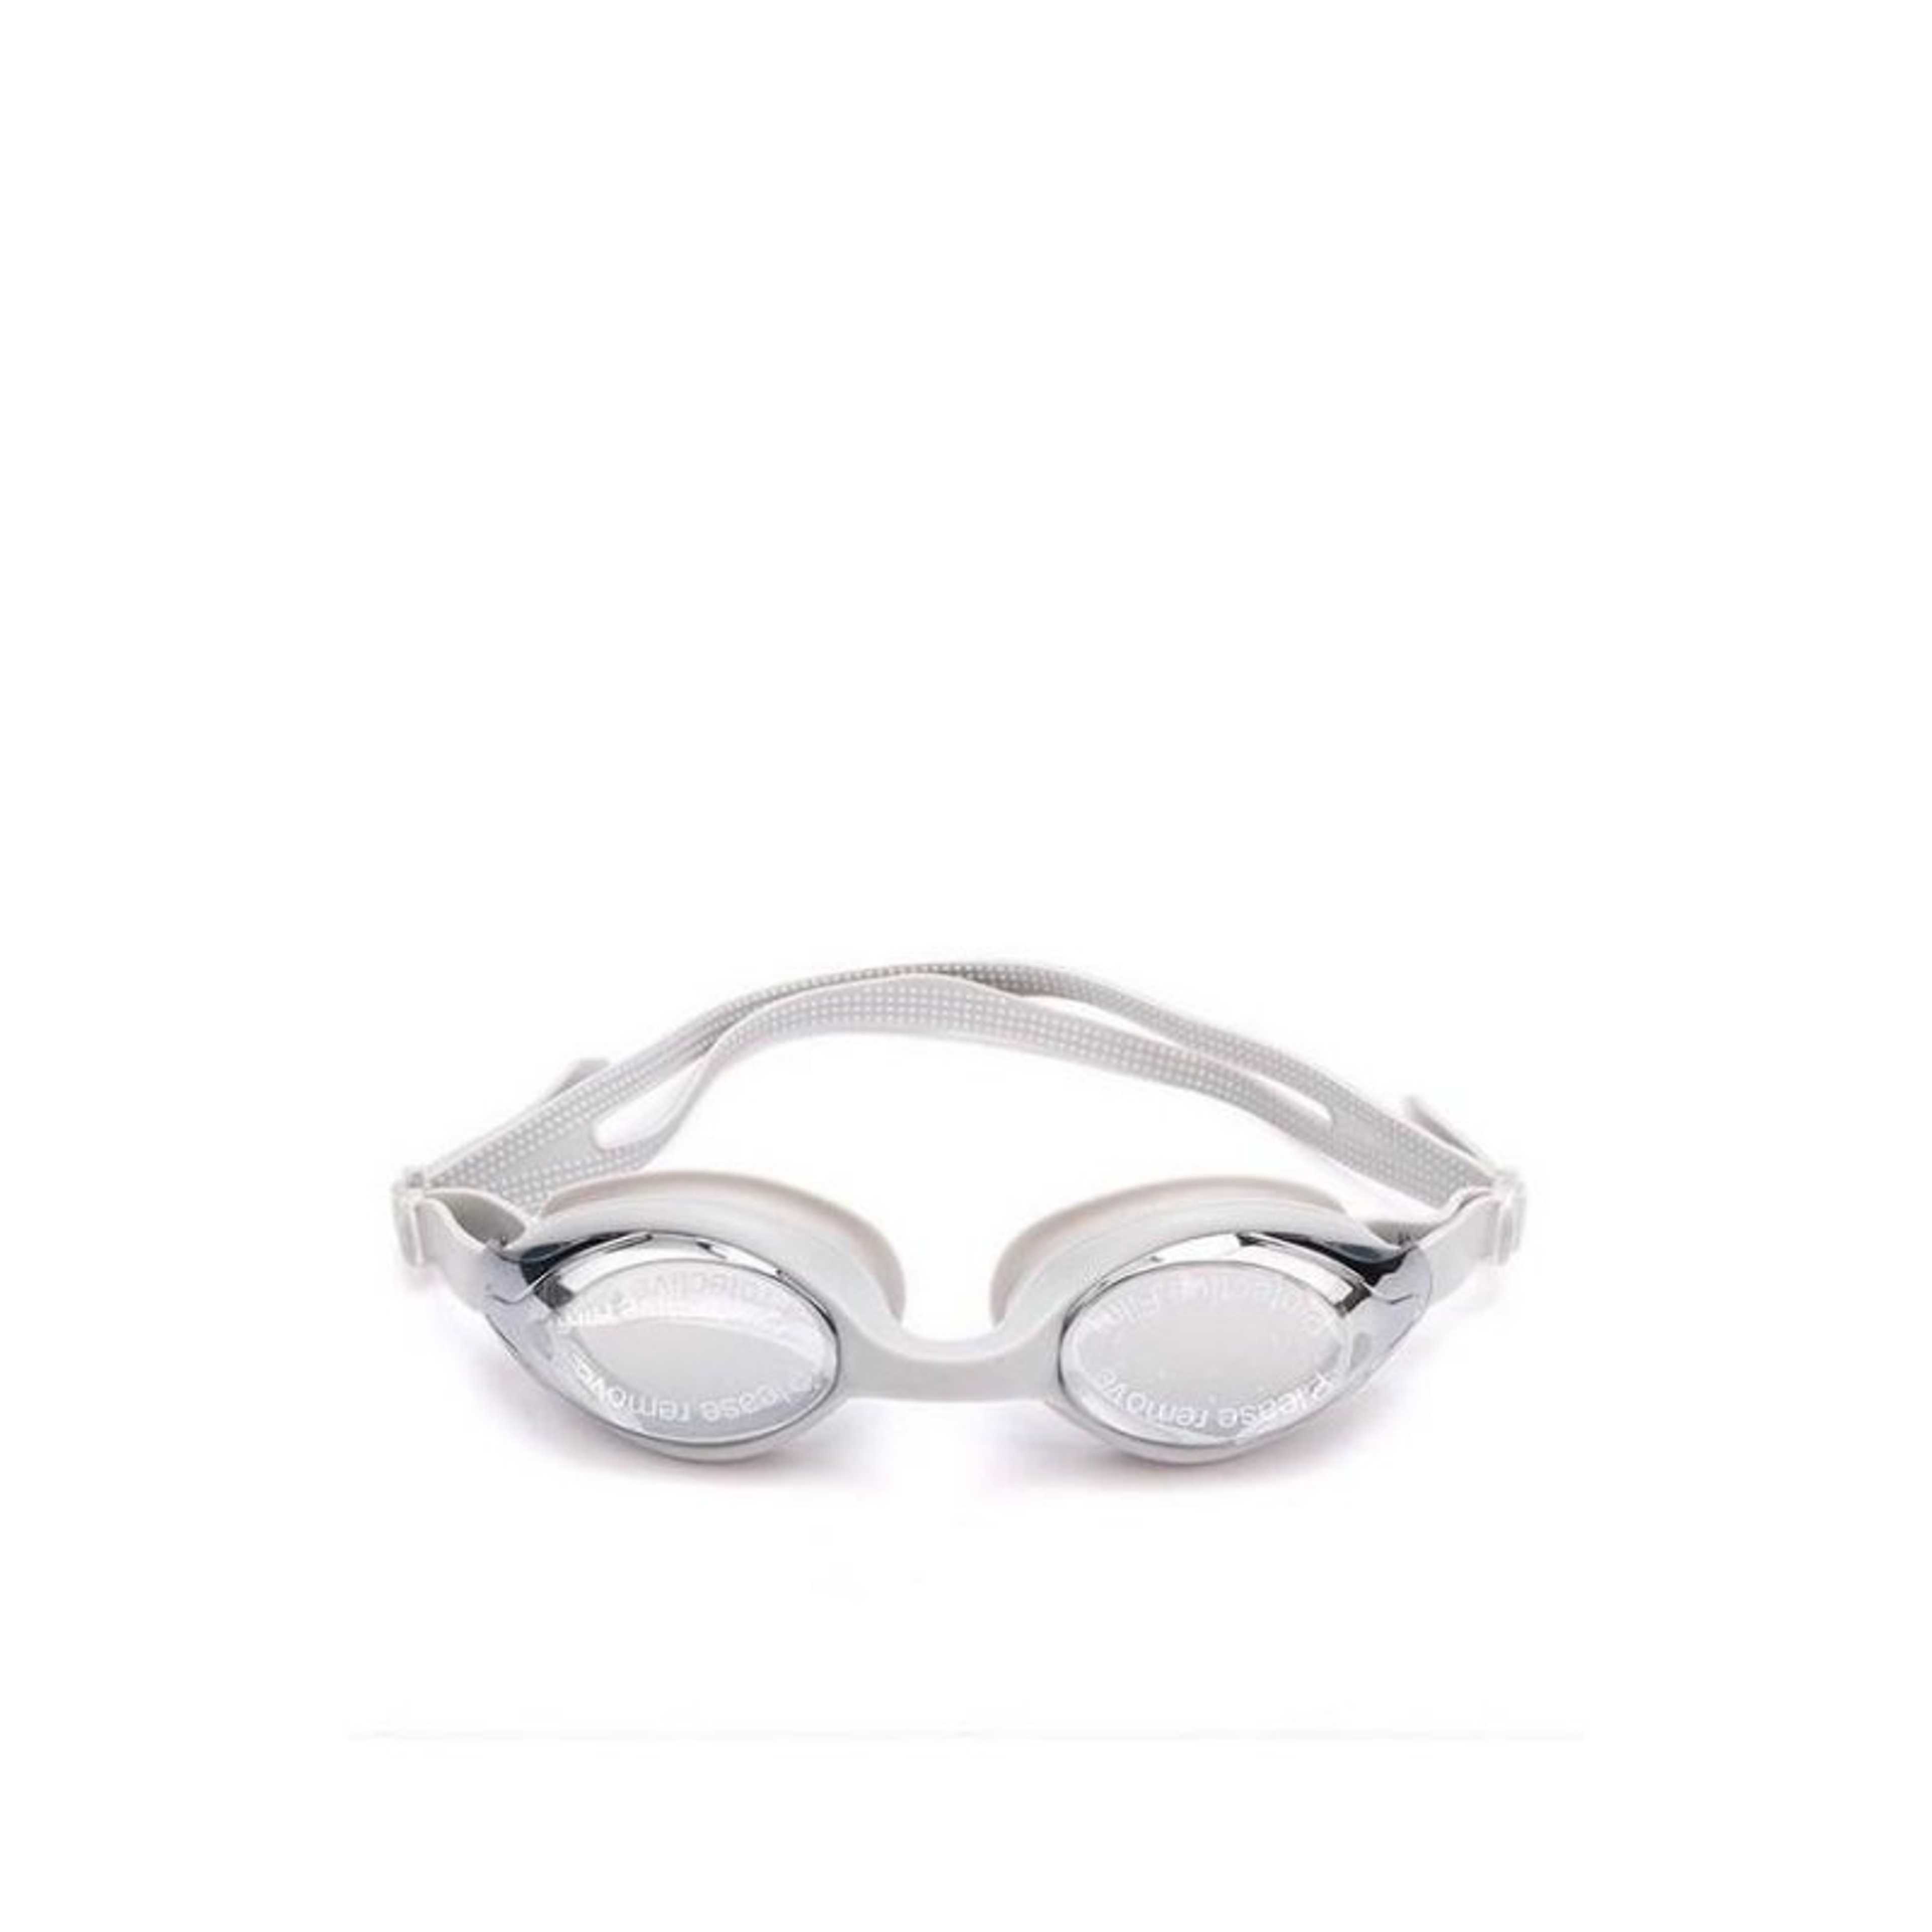 Swimming Goggles - Gray